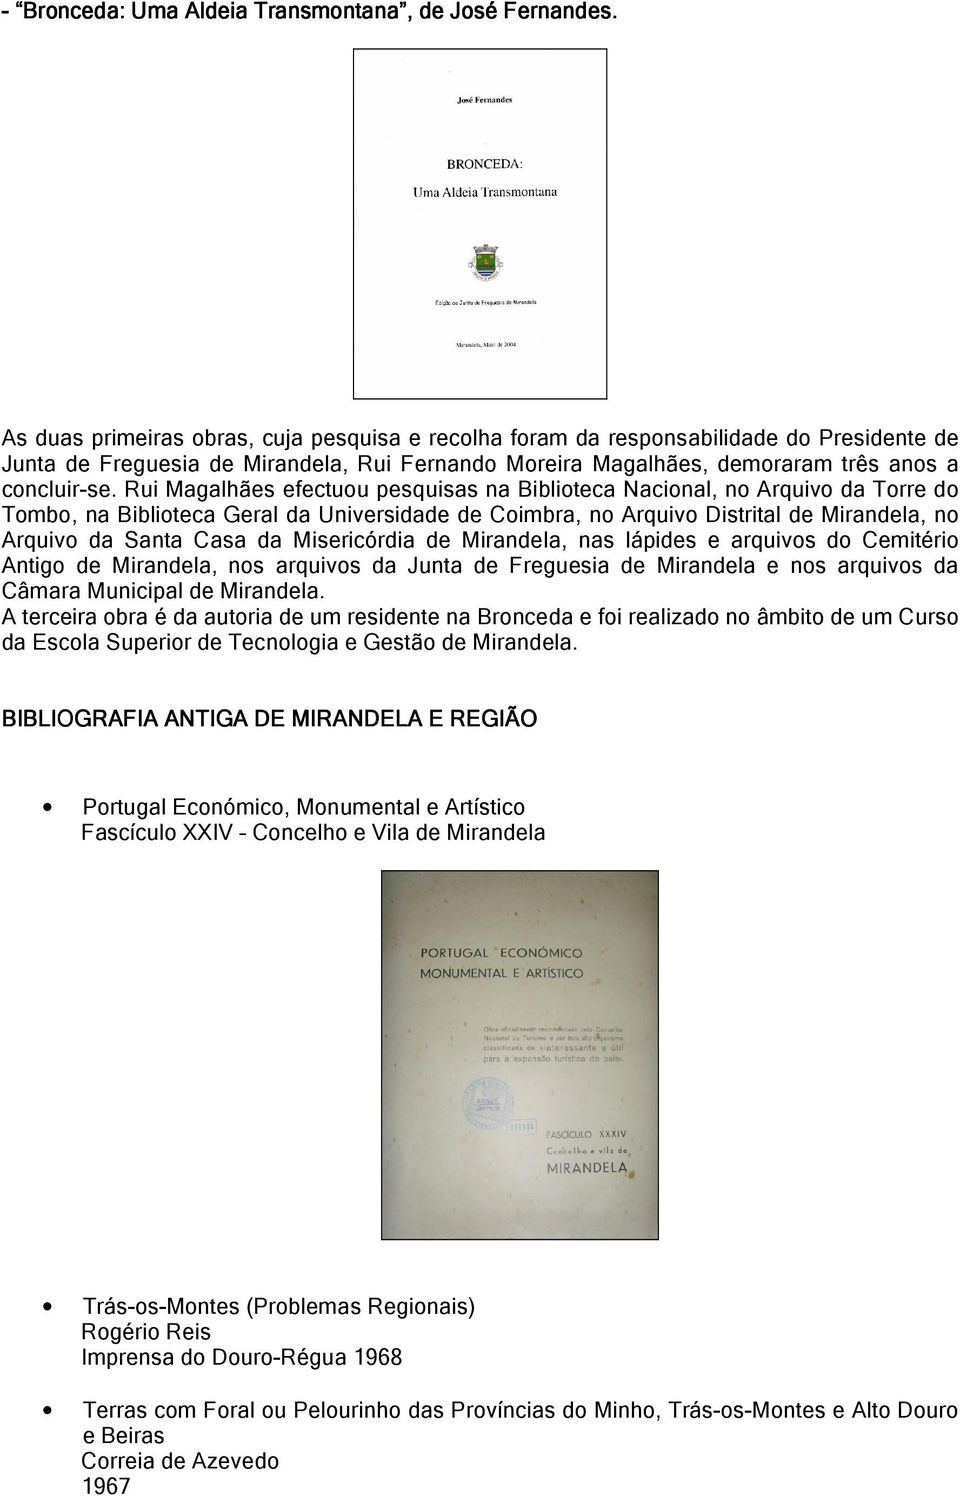 Rui Magalhães efectuou pesquisas na Biblioteca Nacional, no Arquivo da Torre do Tombo, na Biblioteca Geral da Universidade de Coimbra, no Arquivo Distrital de Mirandela, no Arquivo da Santa Casa da